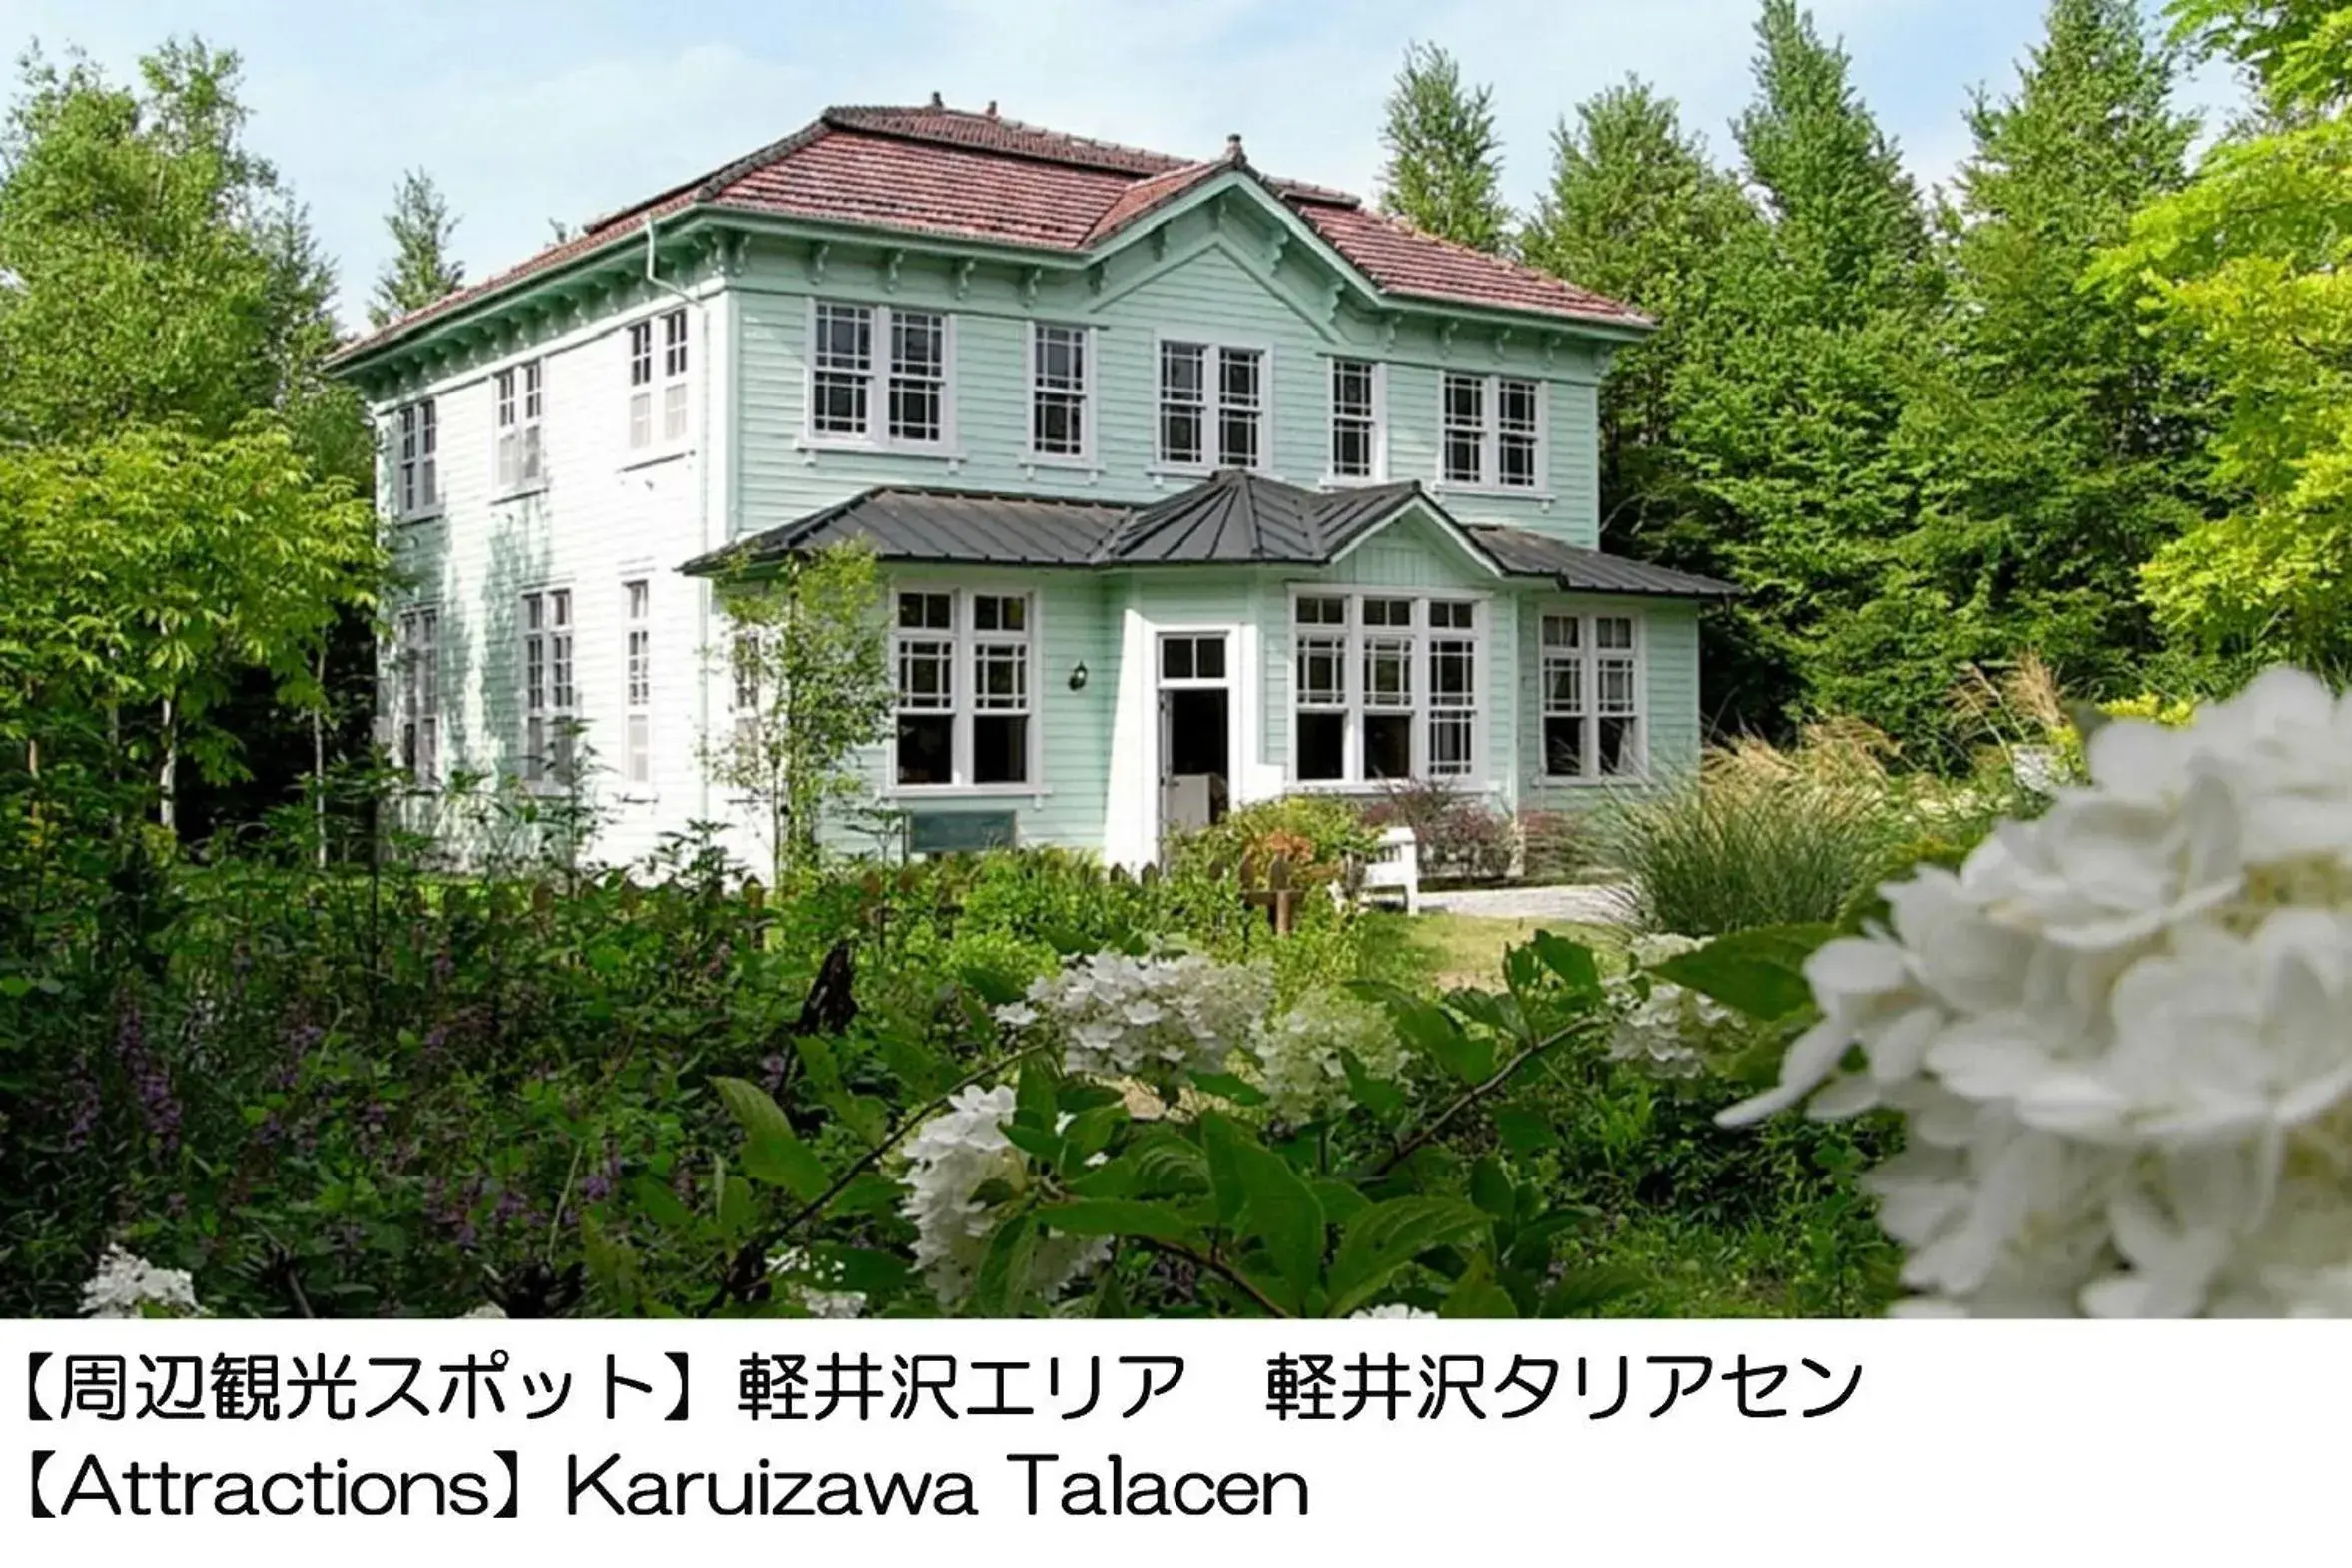 Nearby landmark, Property Building in Karuizawakurabu Hotel 1130 Hewitt Resort